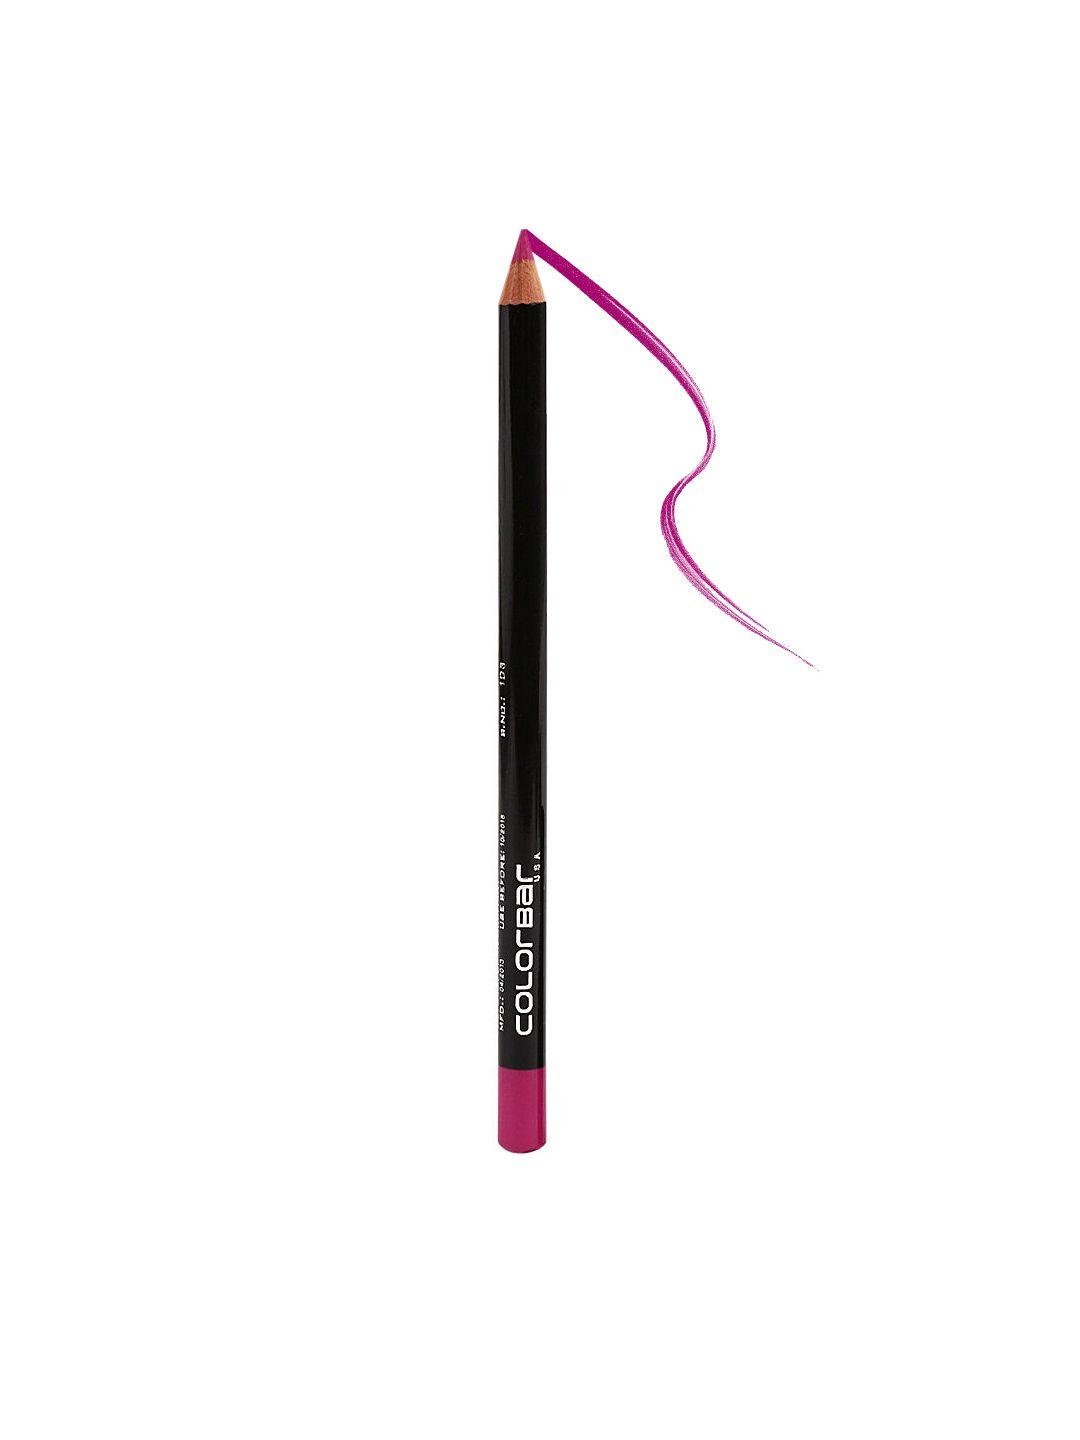 colorbar definer lip liner pencil 1.45 g - berry rose 004